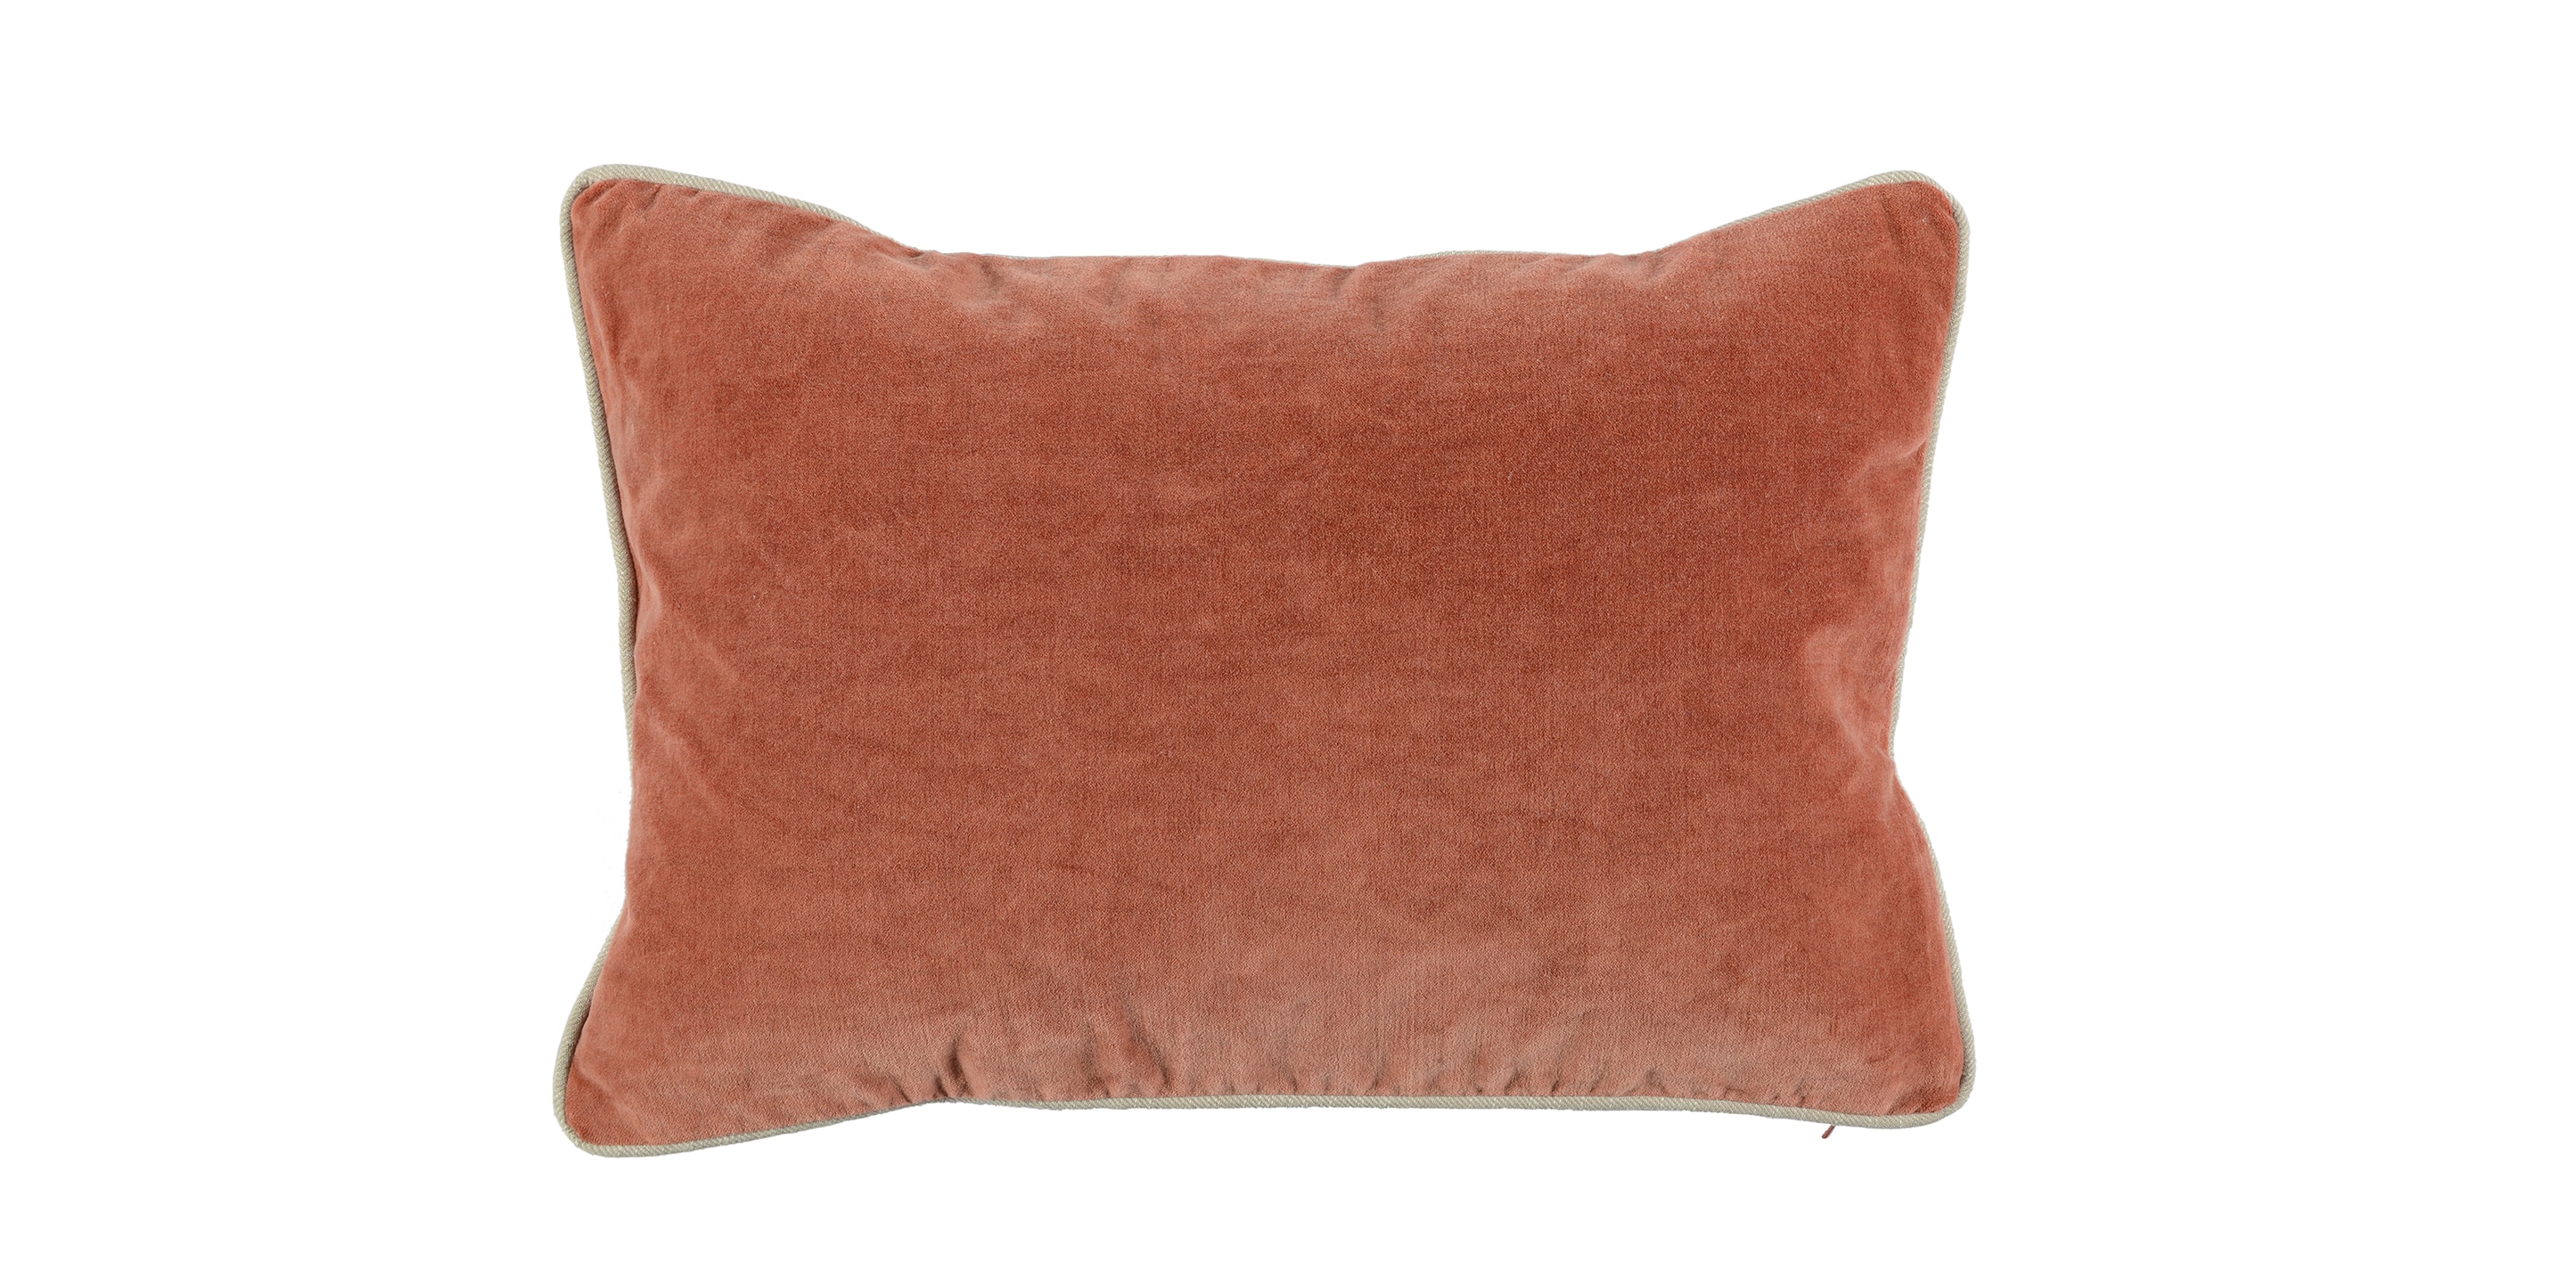 Heirloom Terra Cotta Pillow Cover